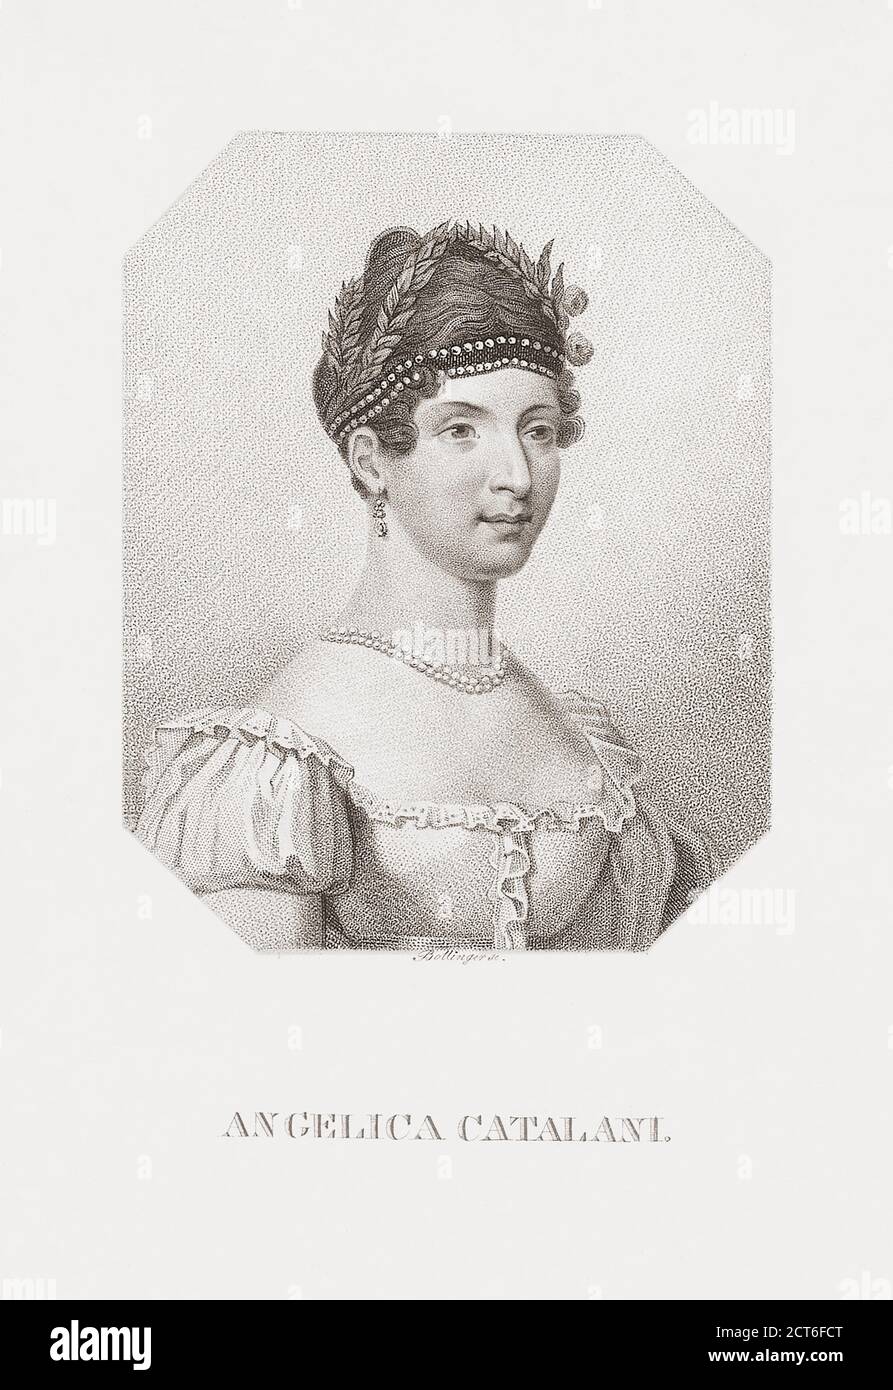 Angelica Catalani, 1780 – 1849. Italienische Opernsängerin. Nach einem Werk des deutschen Künstlers Friedrich Wilhelm Bollinger aus dem 19. Jahrhundert. Stockfoto